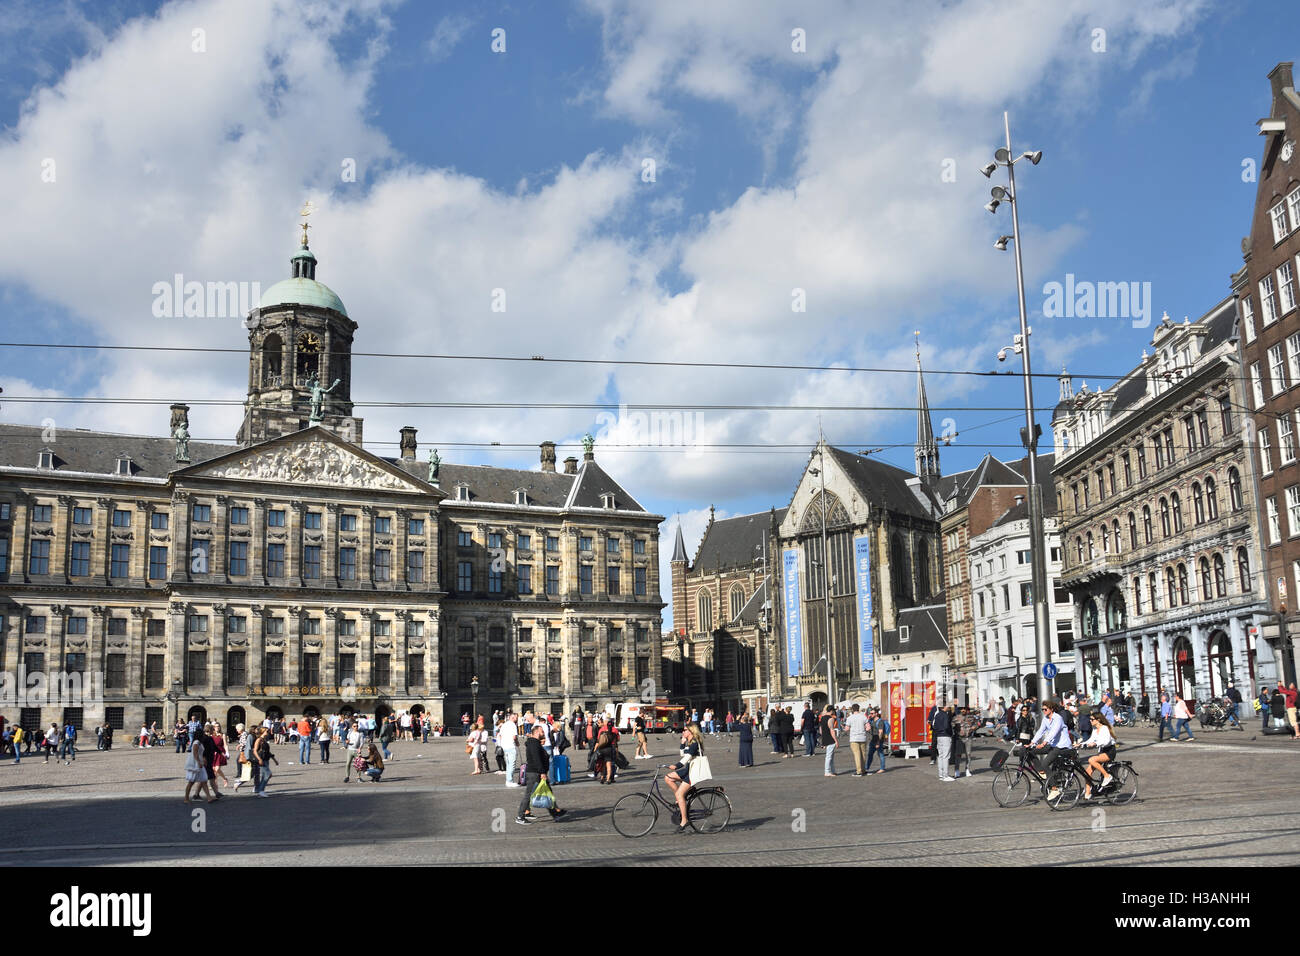 Le Palais Royal - Koninklijk Paleis 17e siècle, Amsterdam - à la place du Dam le Néerlandais Pays-Bas Banque D'Images